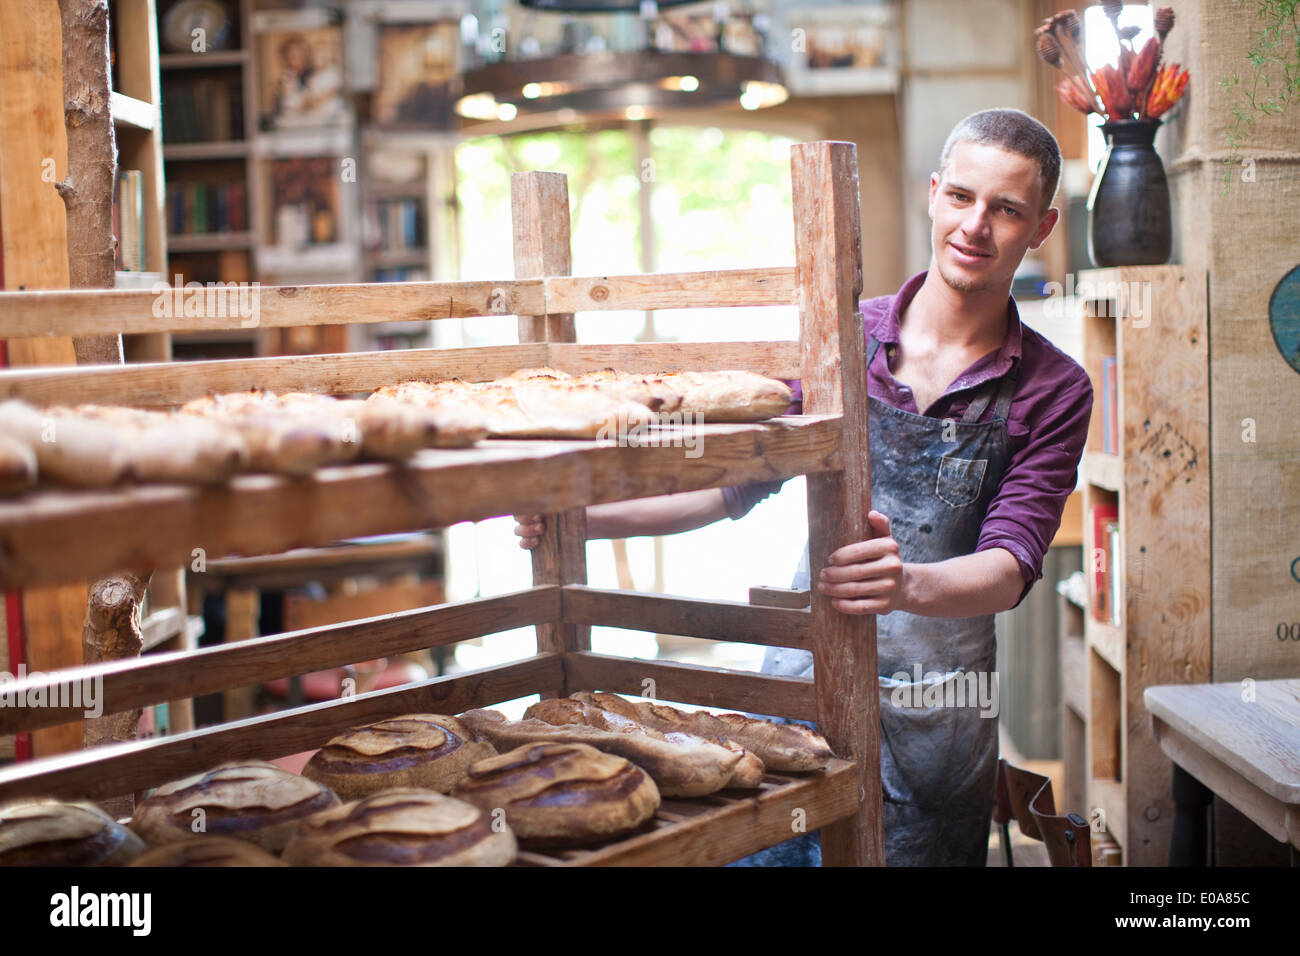 Ritratto di giovane maschio baker con ripiani di pane fresco Foto Stock